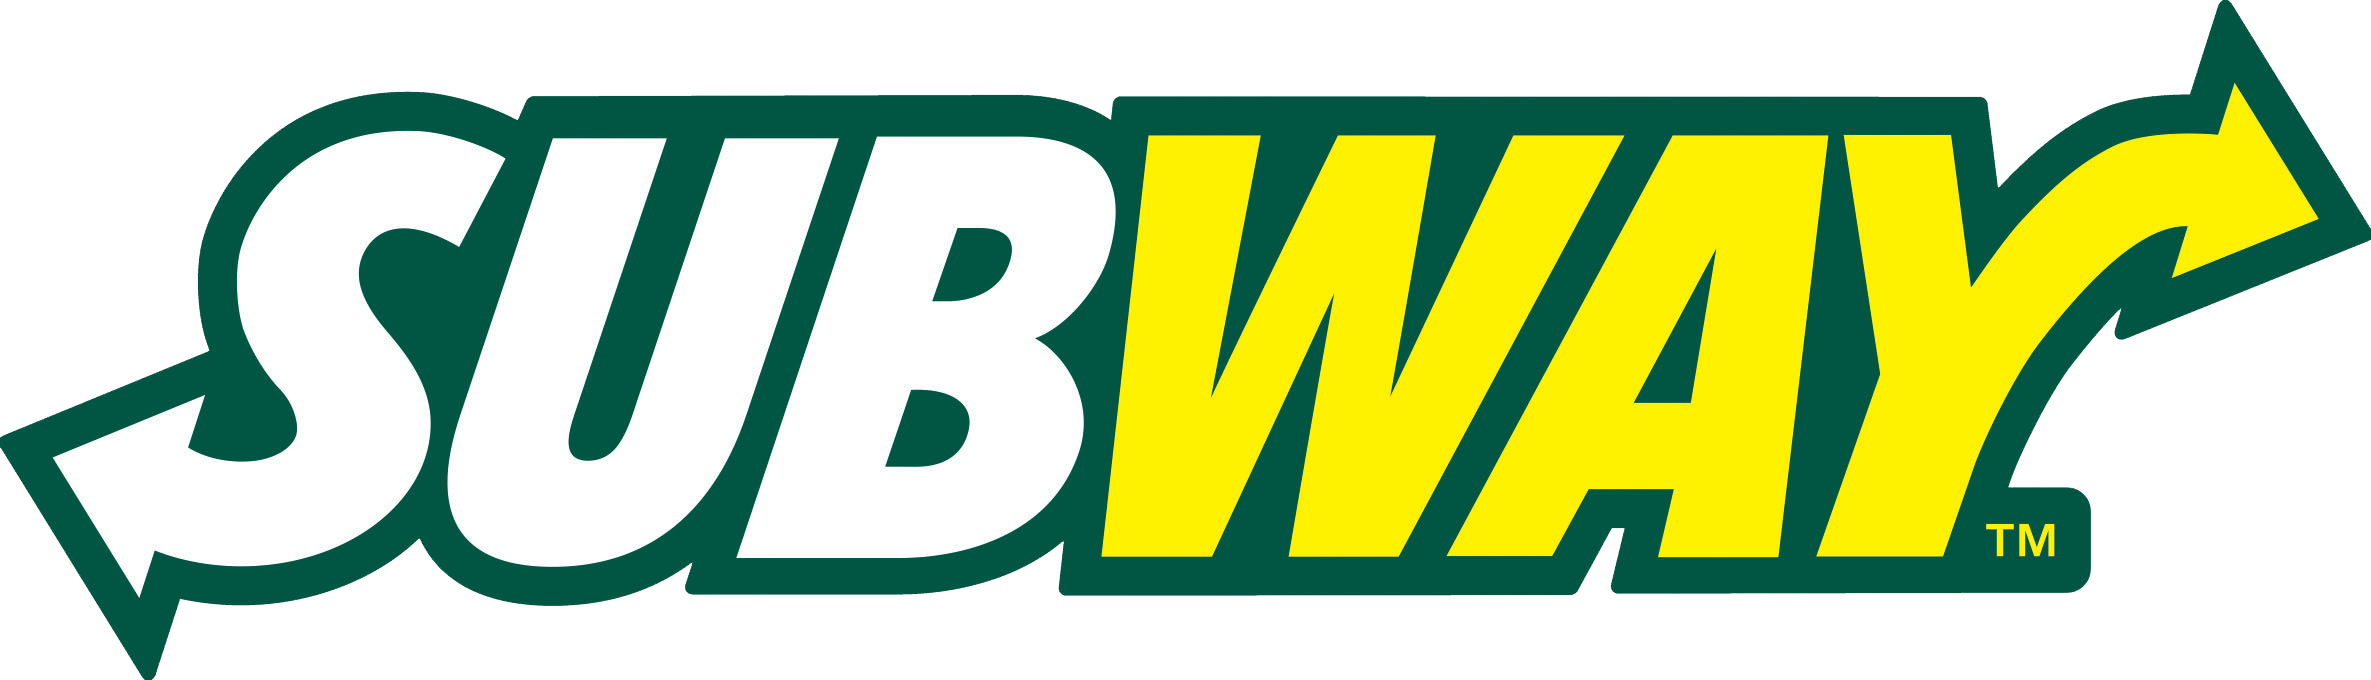 Subway Logo Hd Wallpapers - Subway Logo Png (5000x1437)